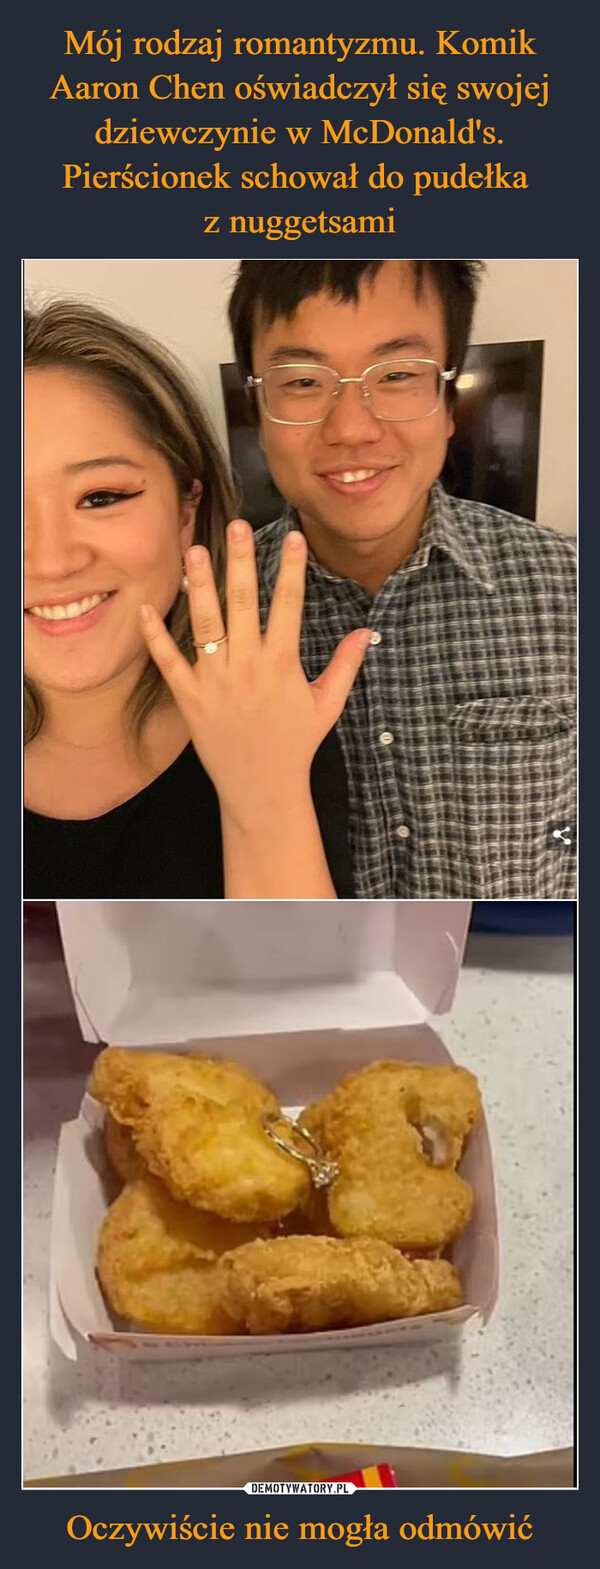 Mój rodzaj romantyzmu. Komik Aaron Chen oświadczył się swojej dziewczynie w McDonald's. Pierścionek schował do pudełka 
z nuggetsami Oczywiście nie mogła odmówić